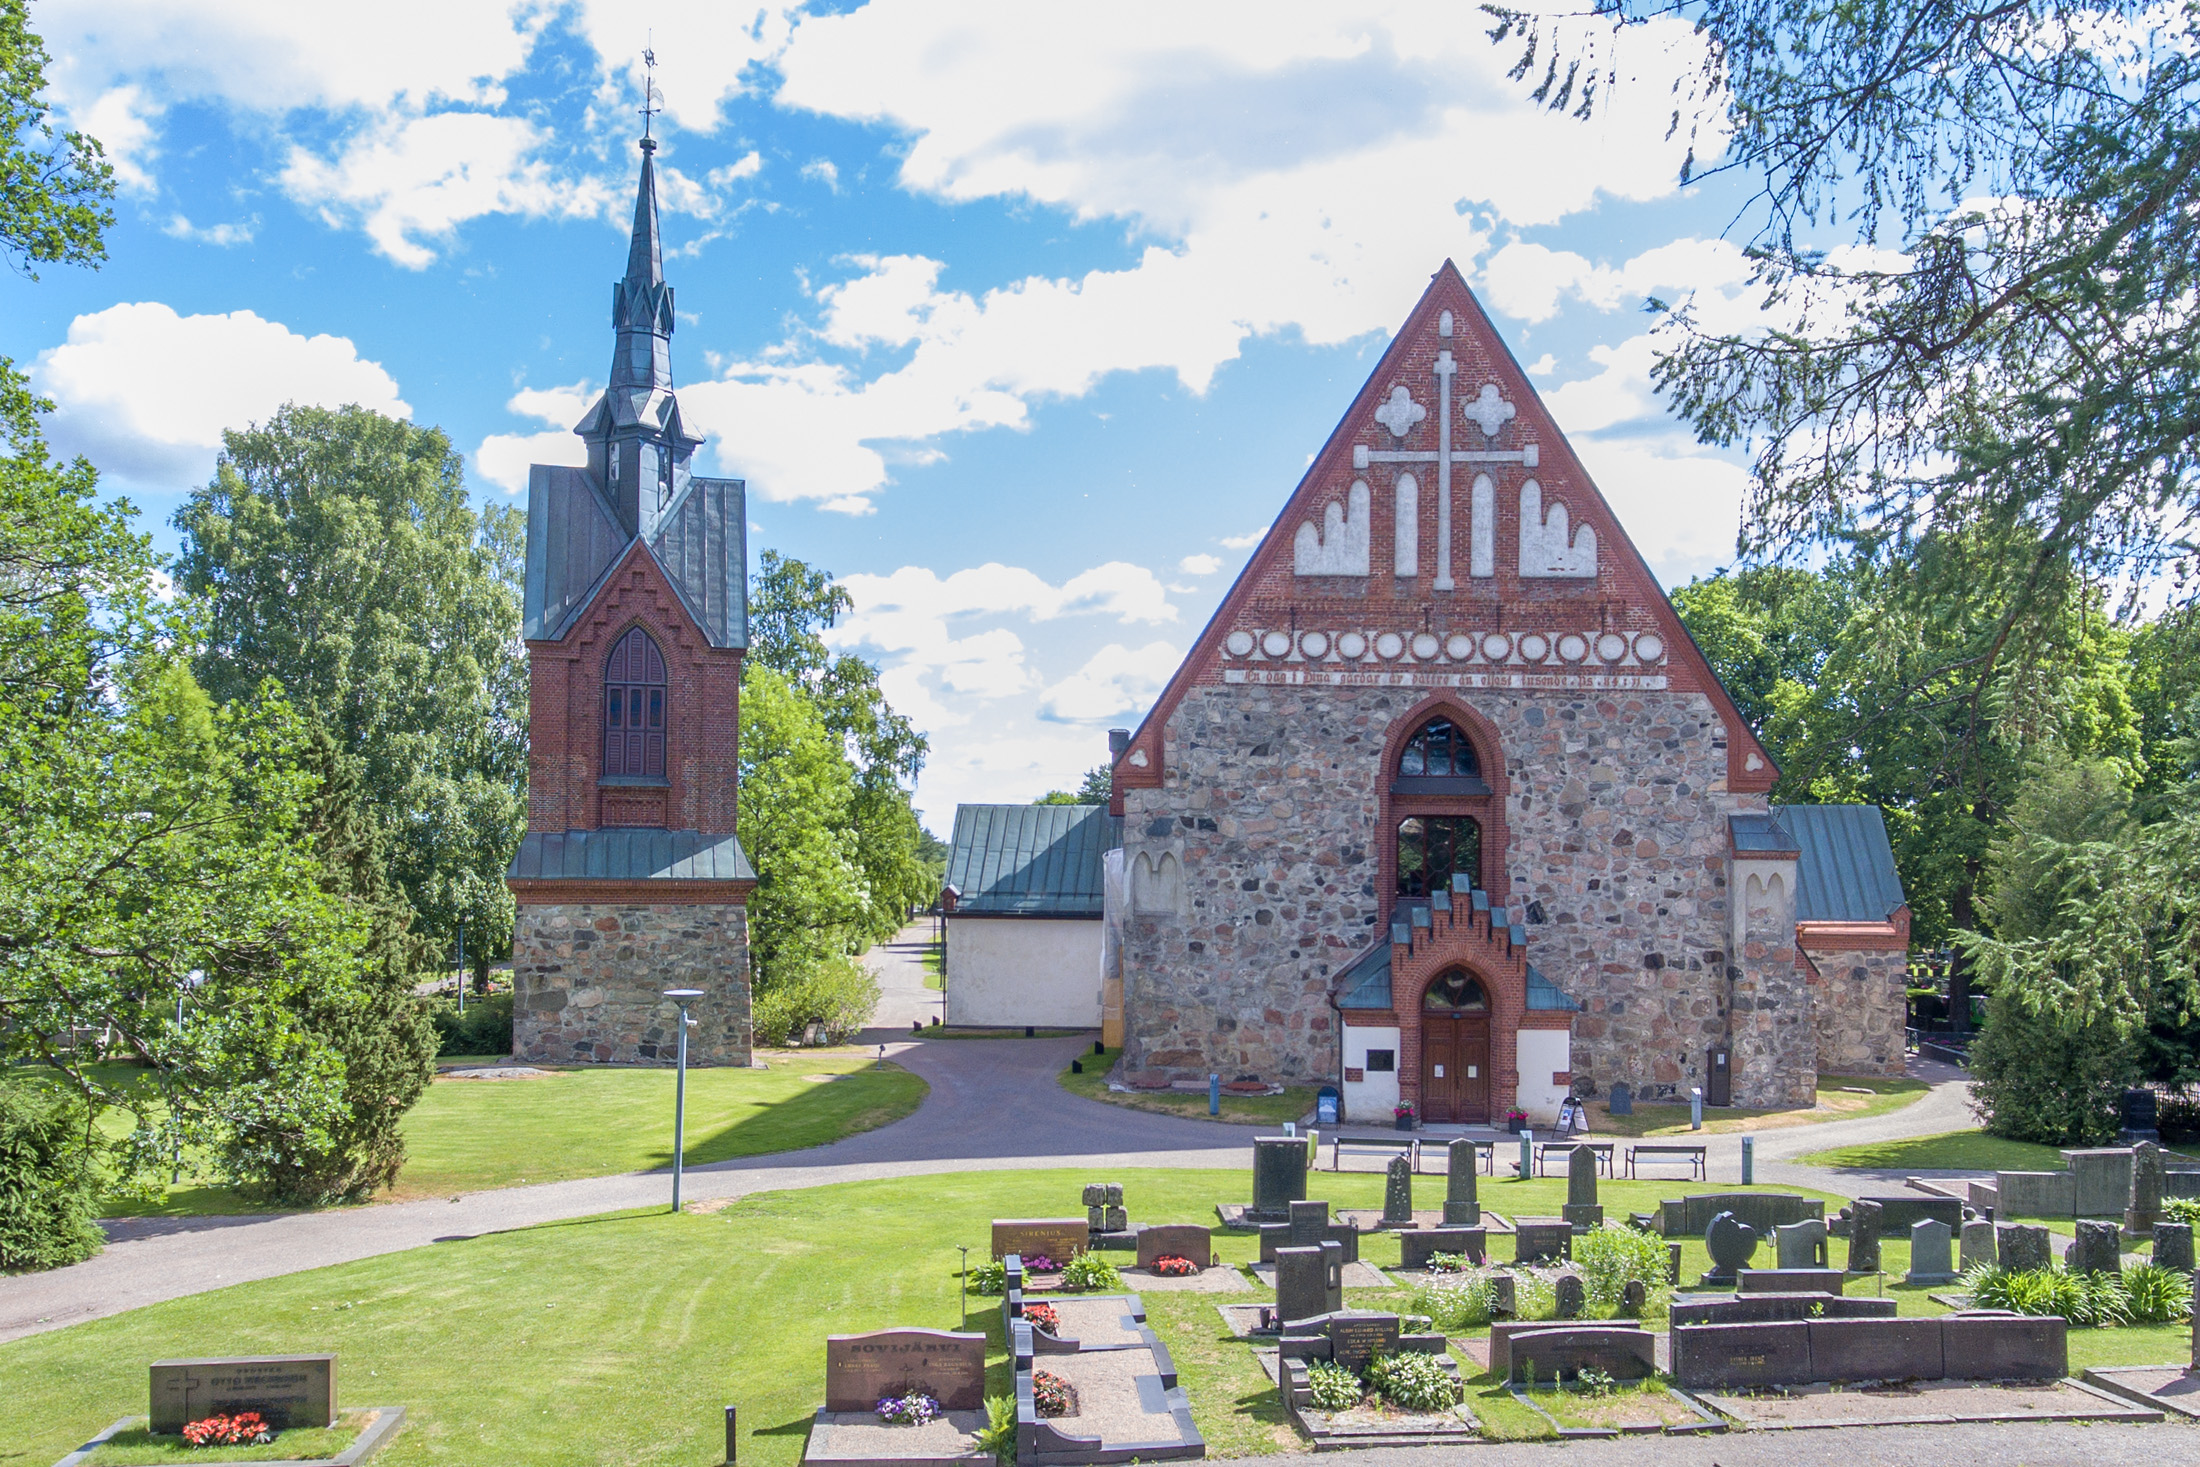 Foto av Helsinge kyrka S:t Lars sett från luften.